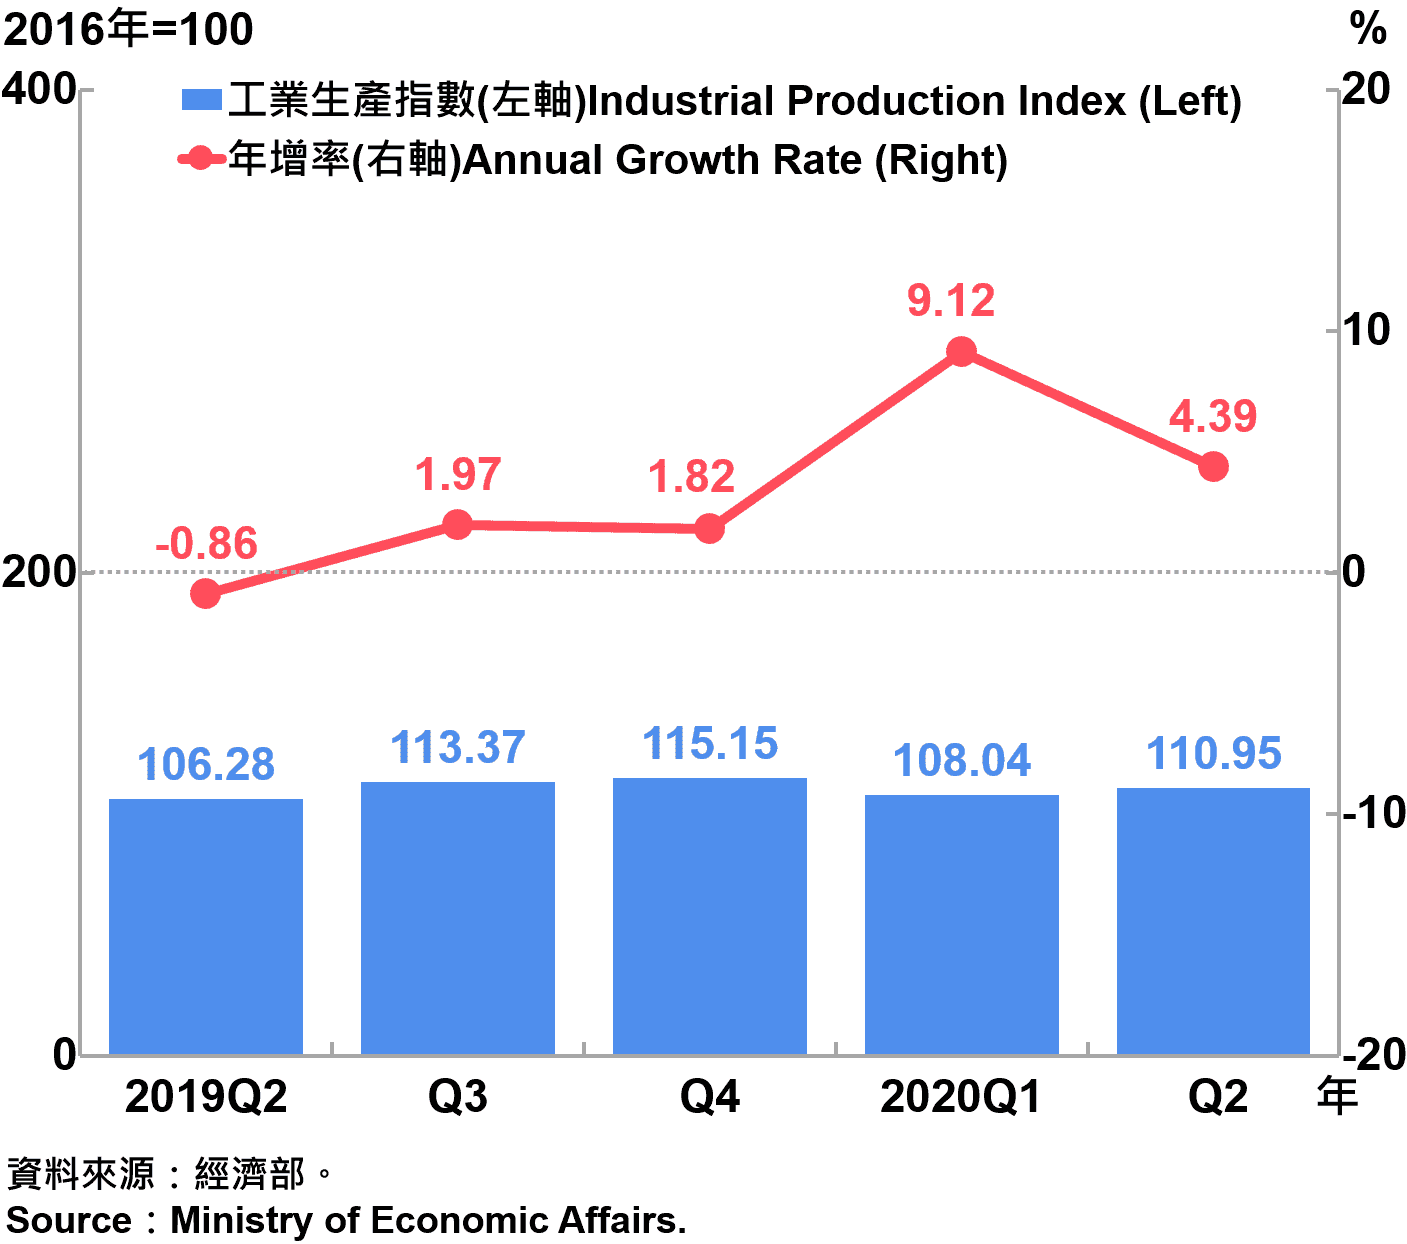 臺灣工業生產指數 Industrial Production Index in Taiwan